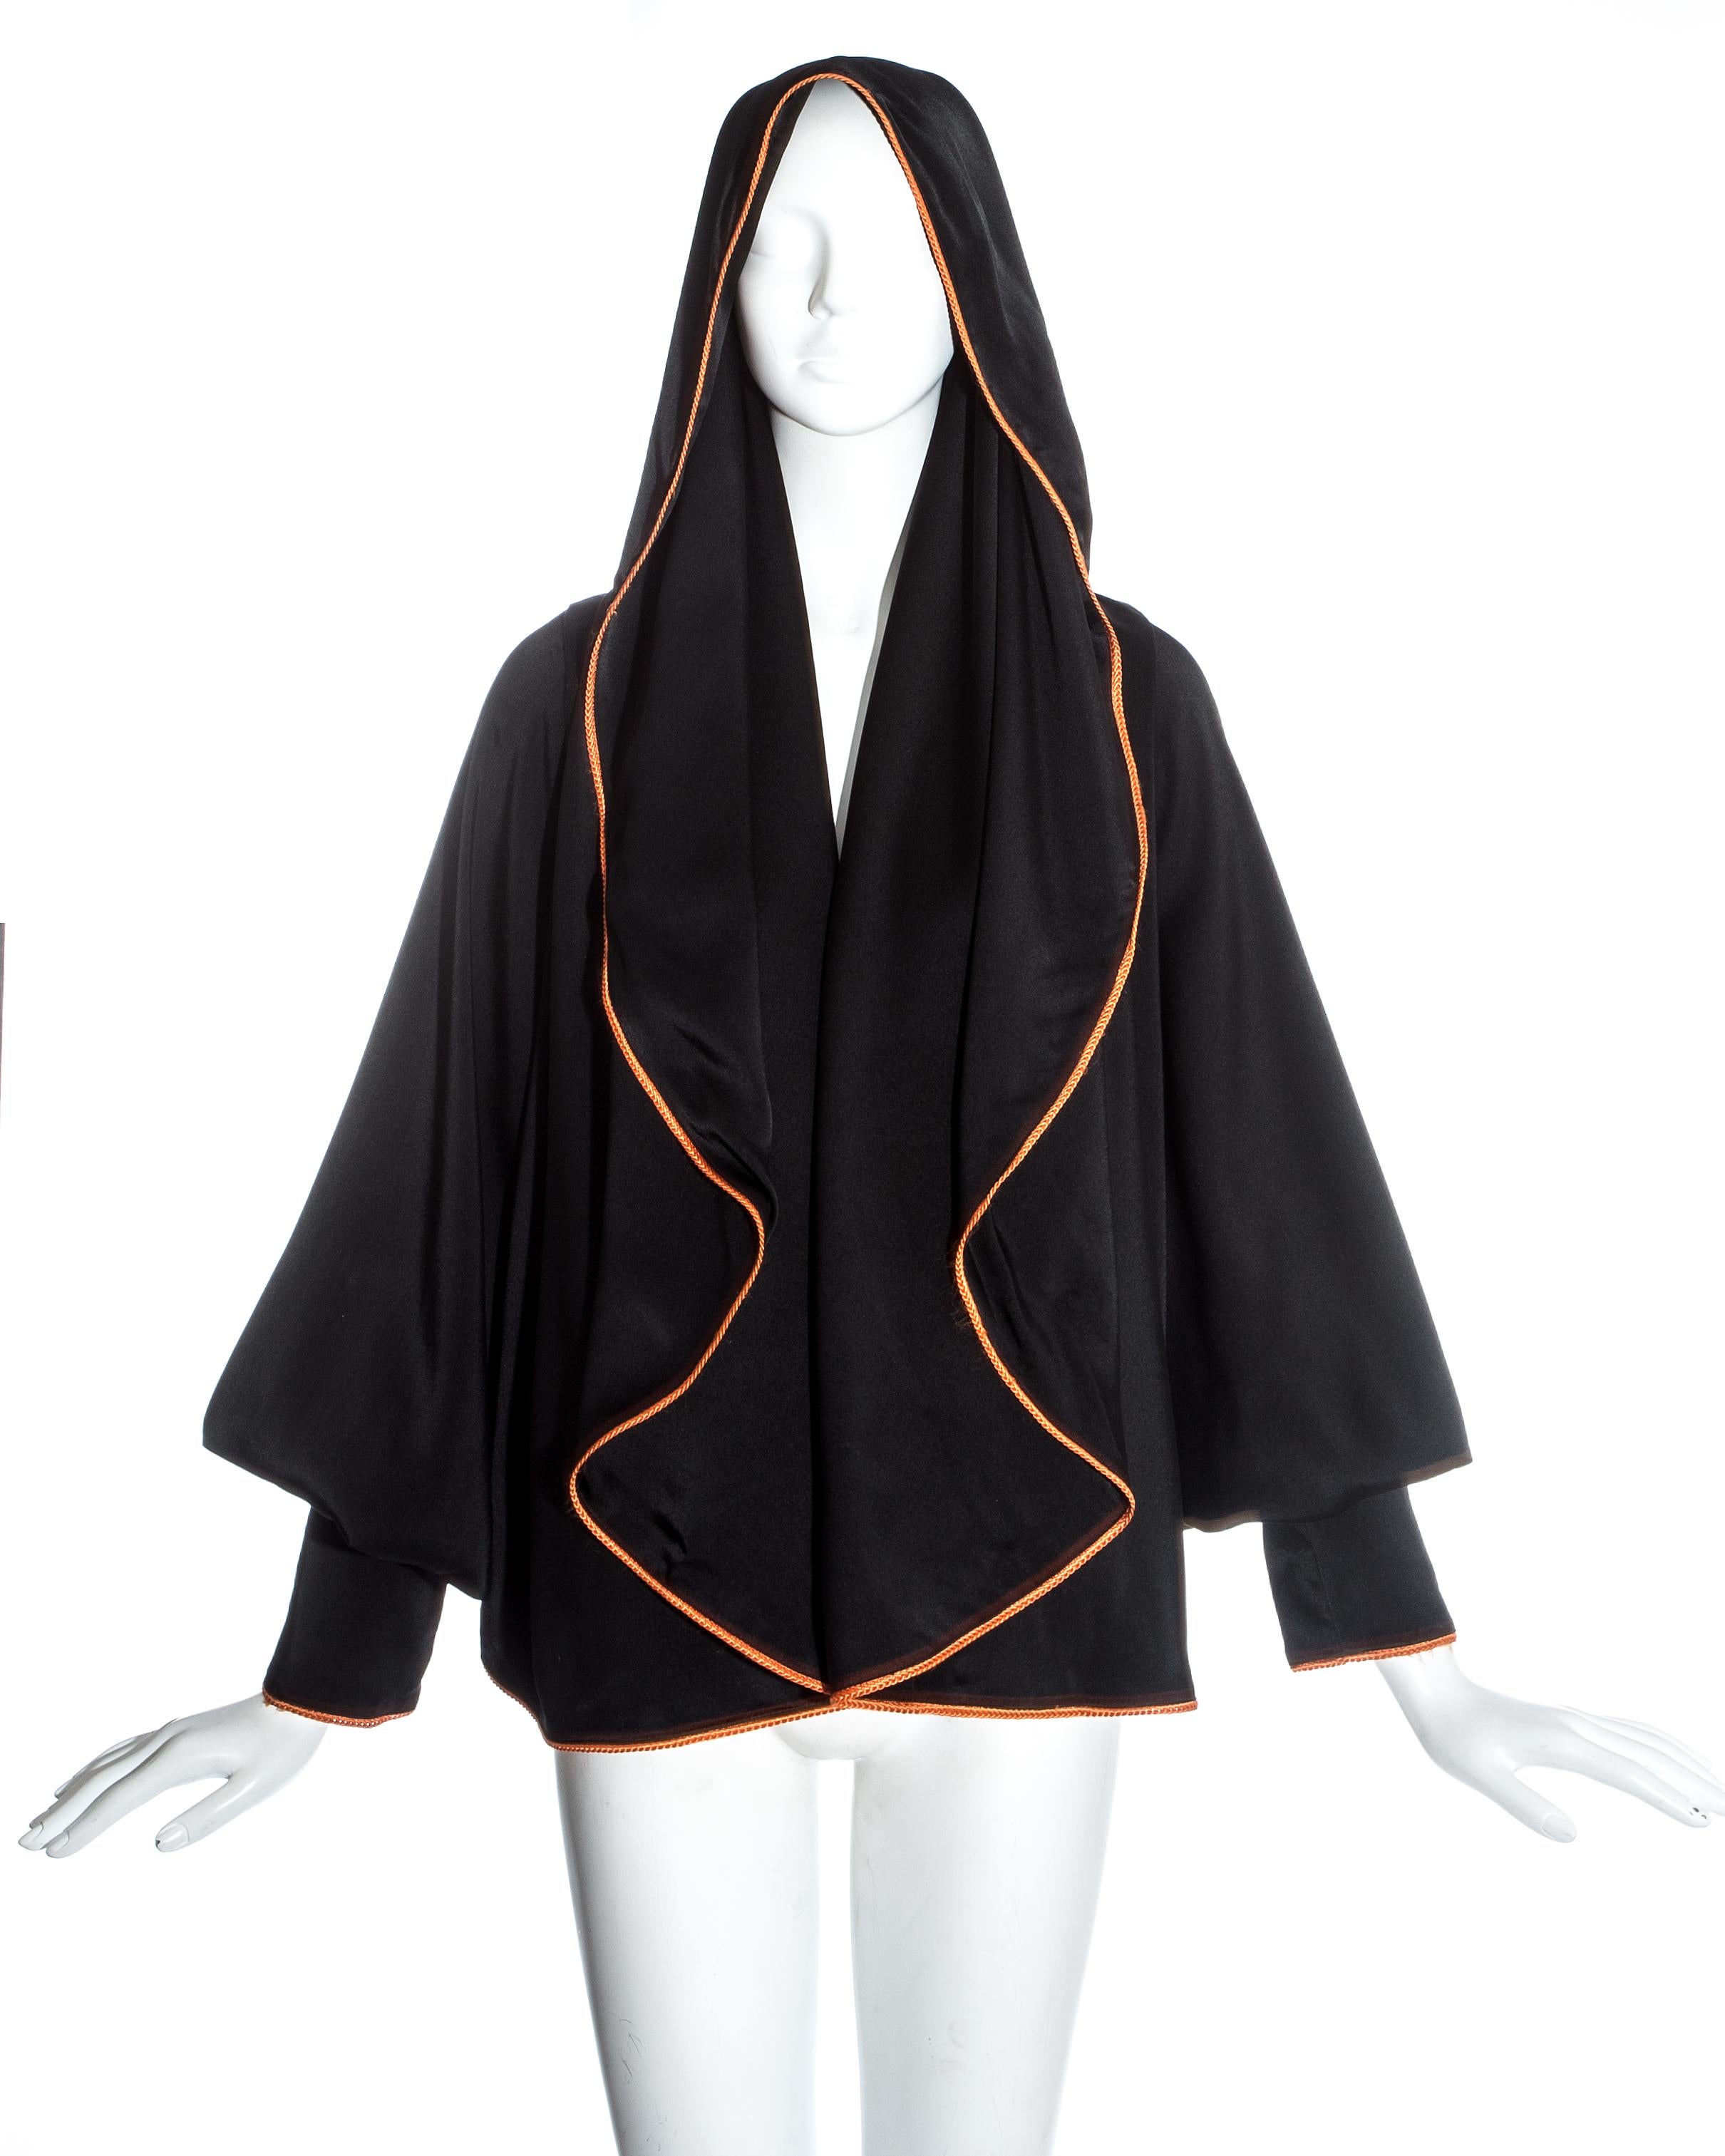 Vivienne Westwood black satin hooded bolero jacket with braided orange trim and bishop sleeves.

Spring-Summer 1993